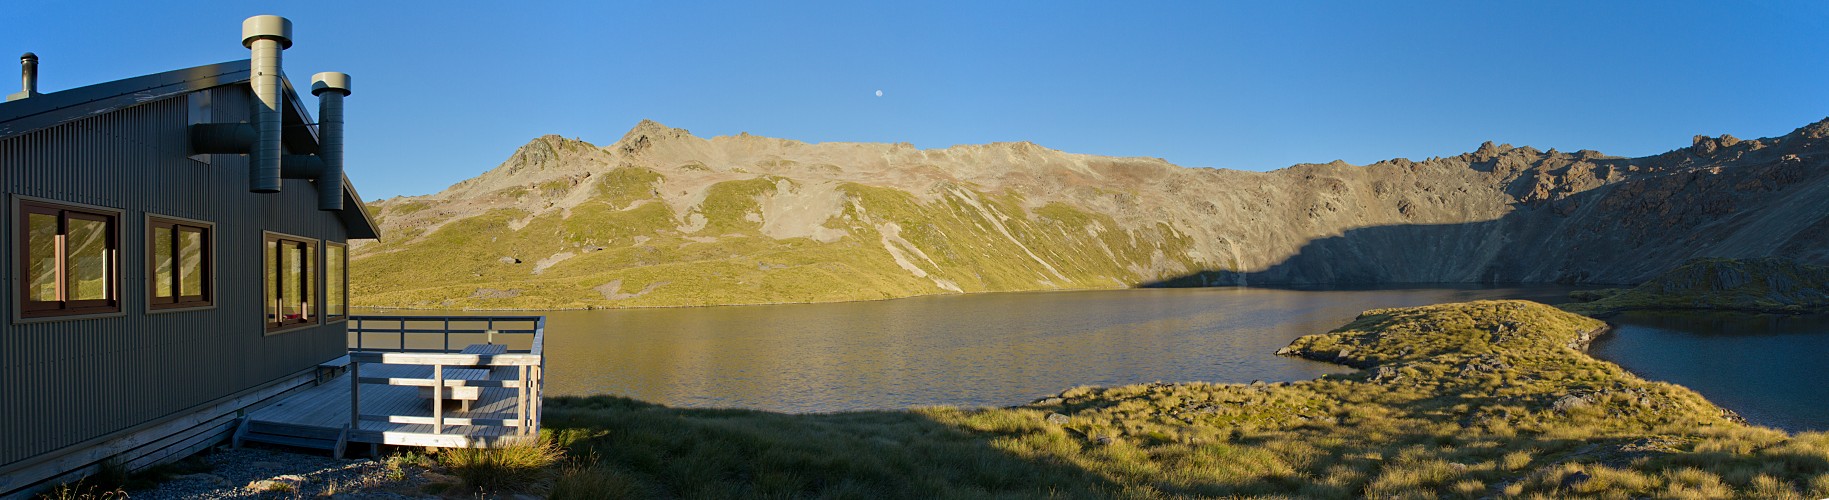 Angelus Hut and Lake Angelus panorama